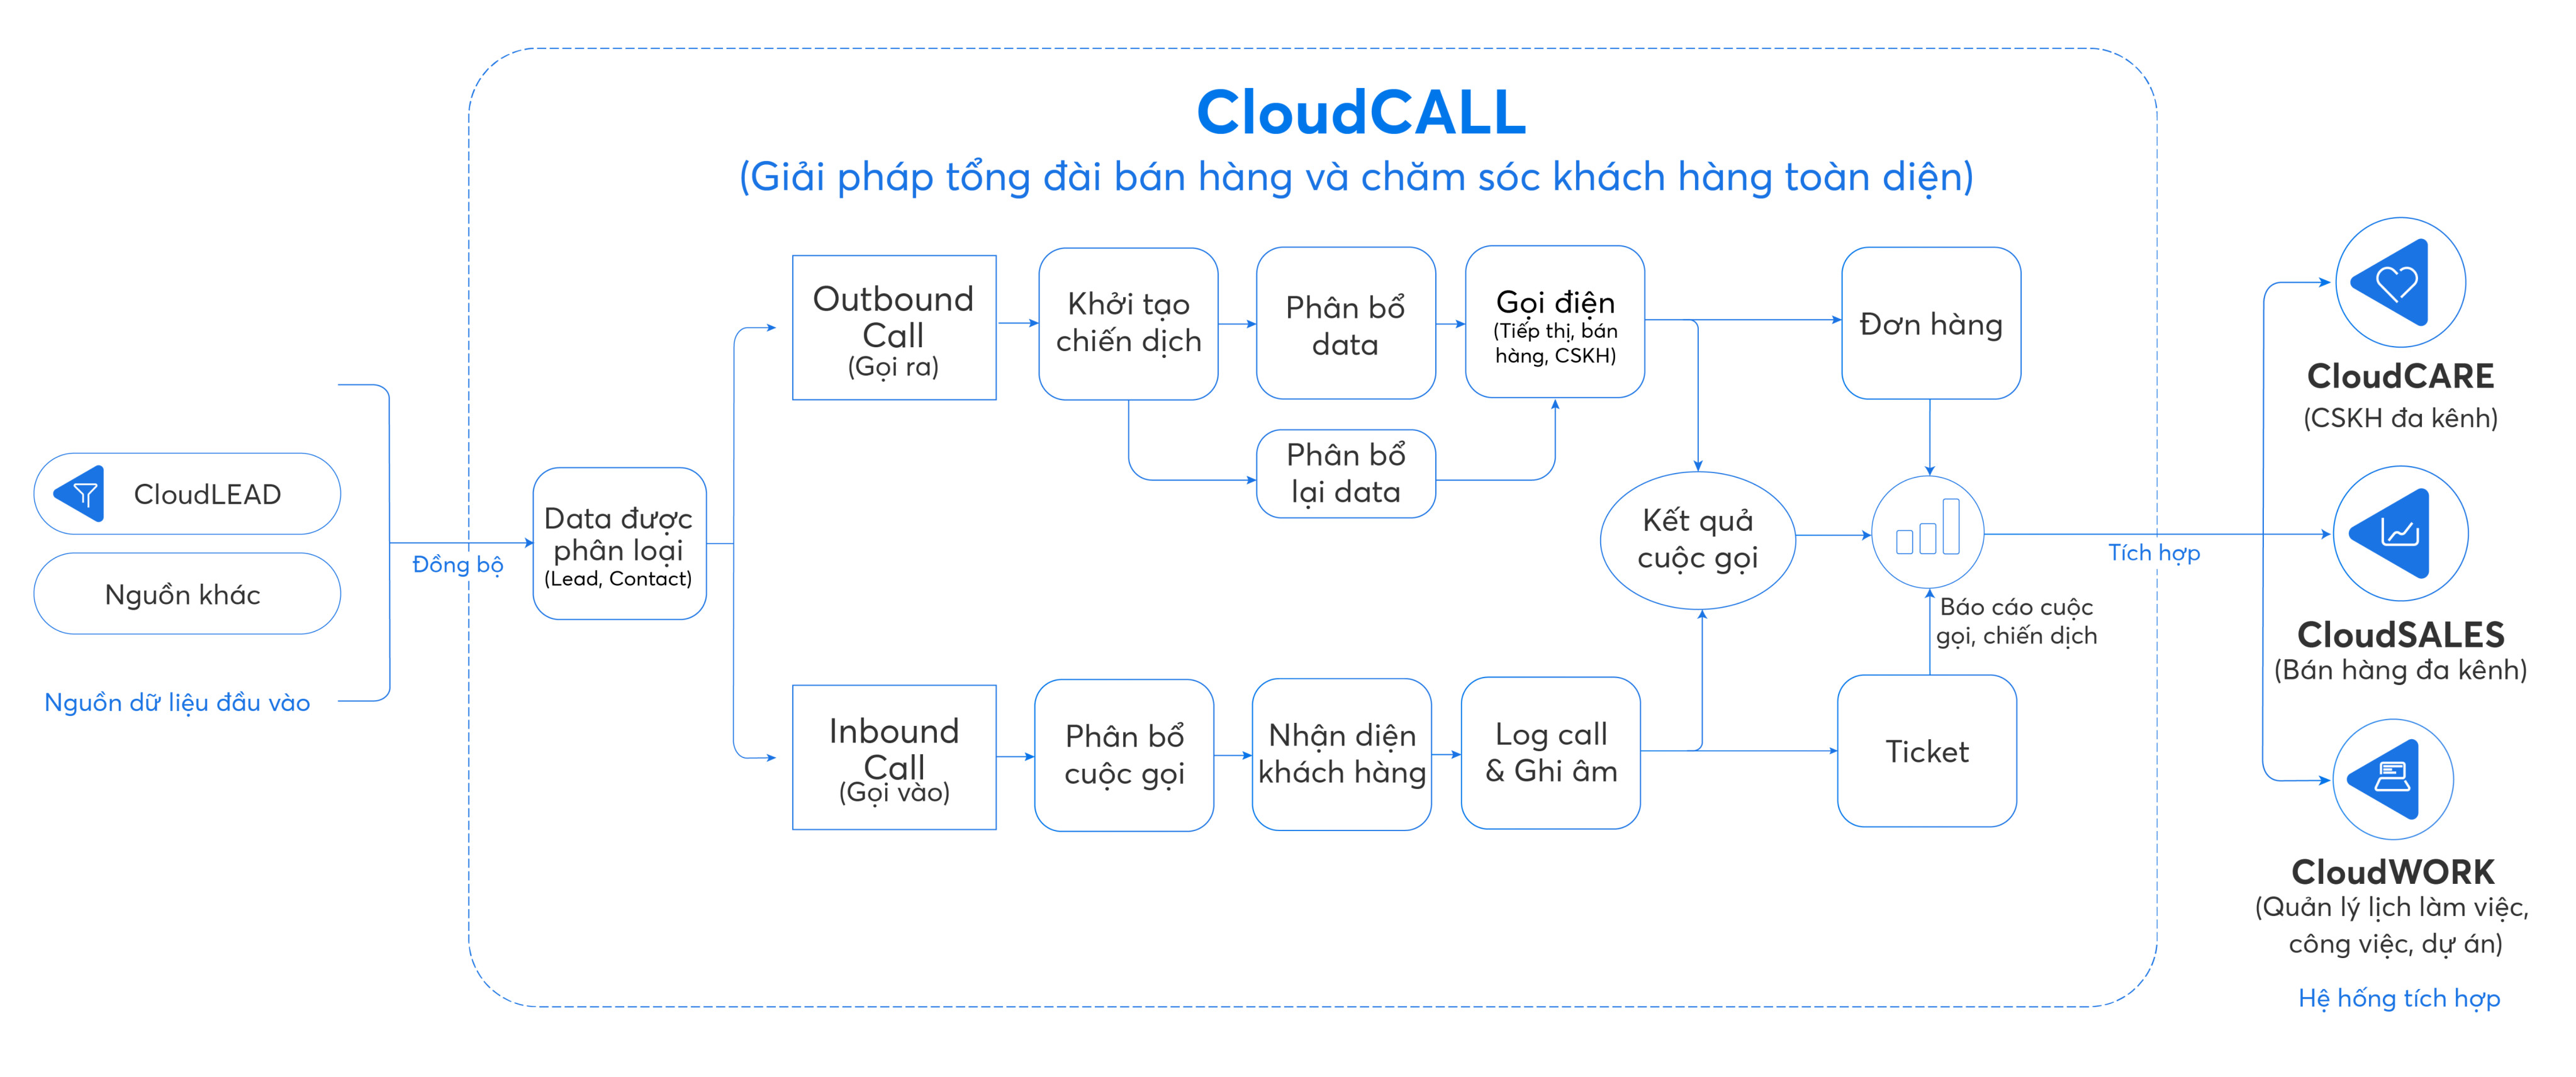 Quy trình giải pháp tổng đài bán hàng và chăm sóc khách hàng bằng CloudCALL